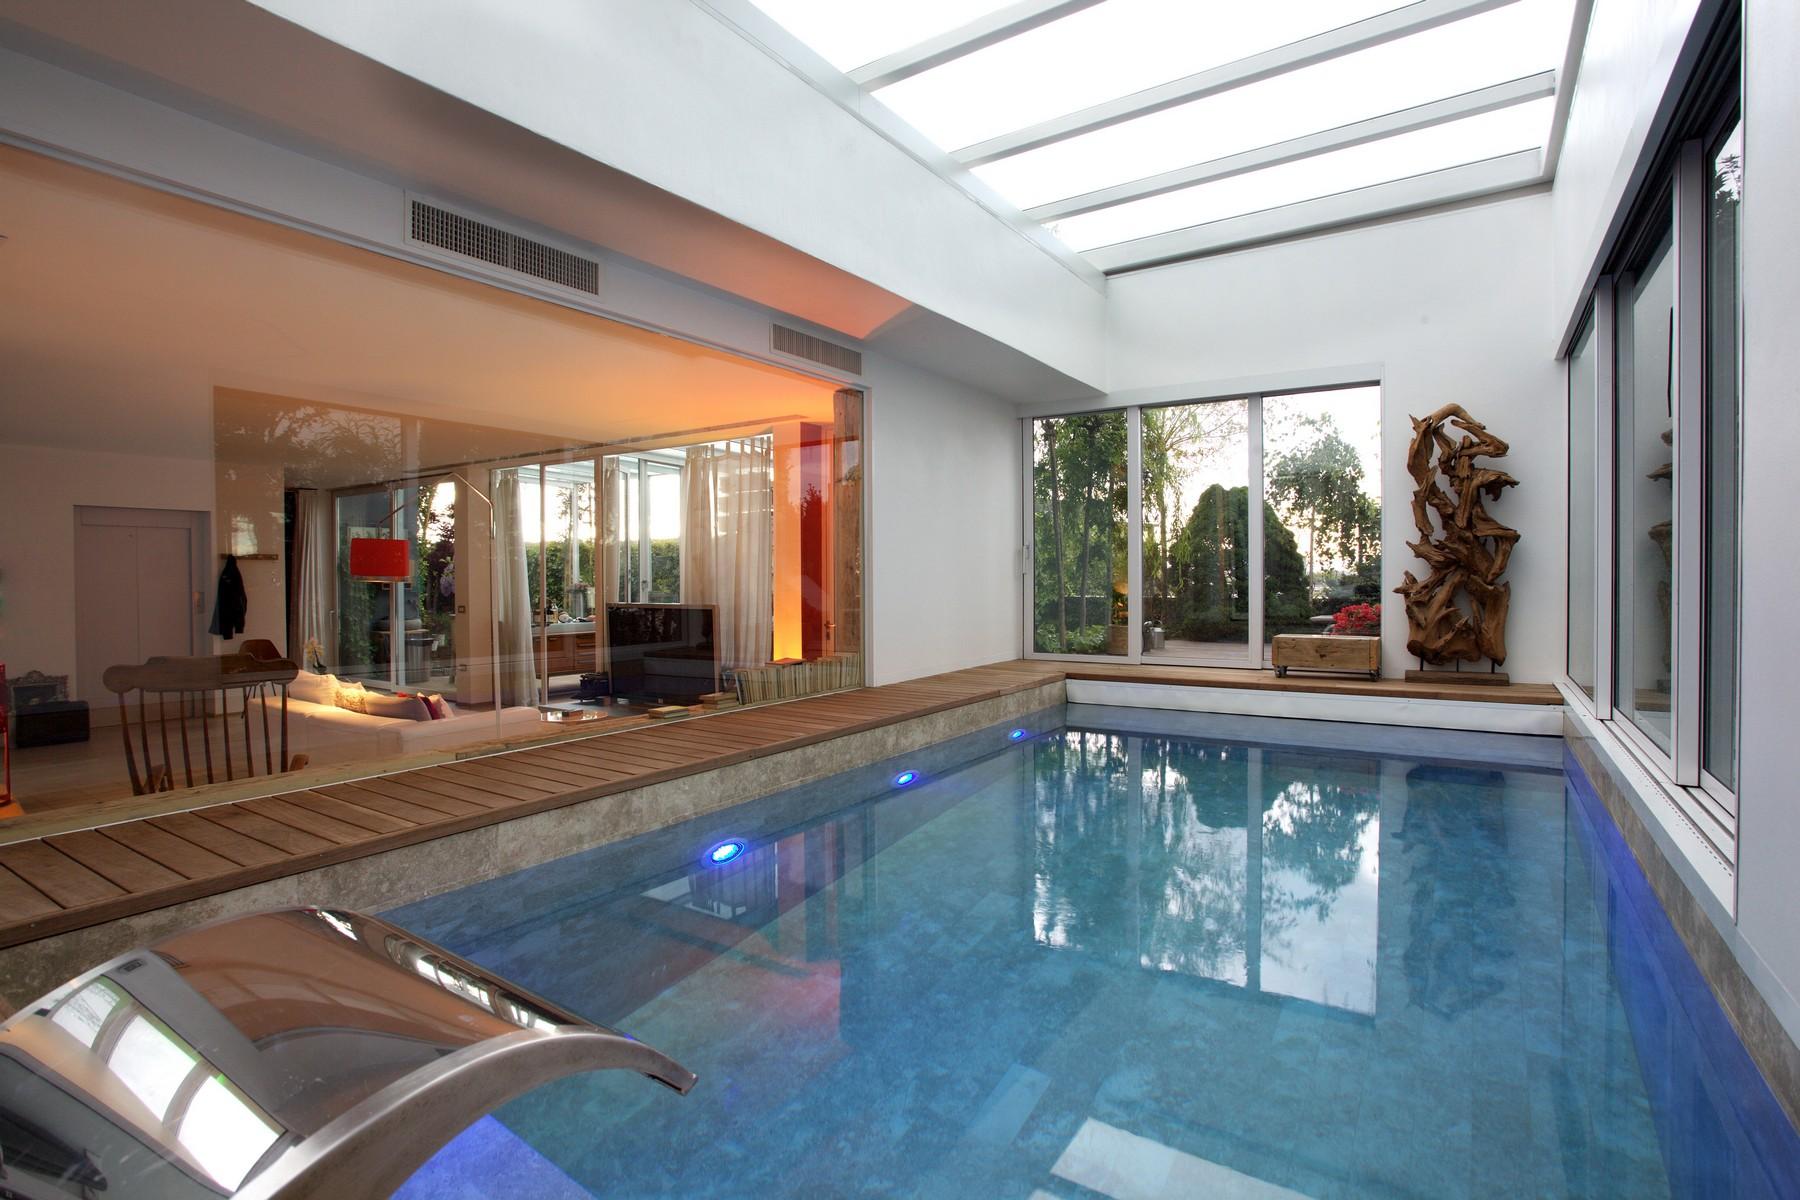 Incantevole loft di 350 mq con piscina privata e giardino pensile - 13